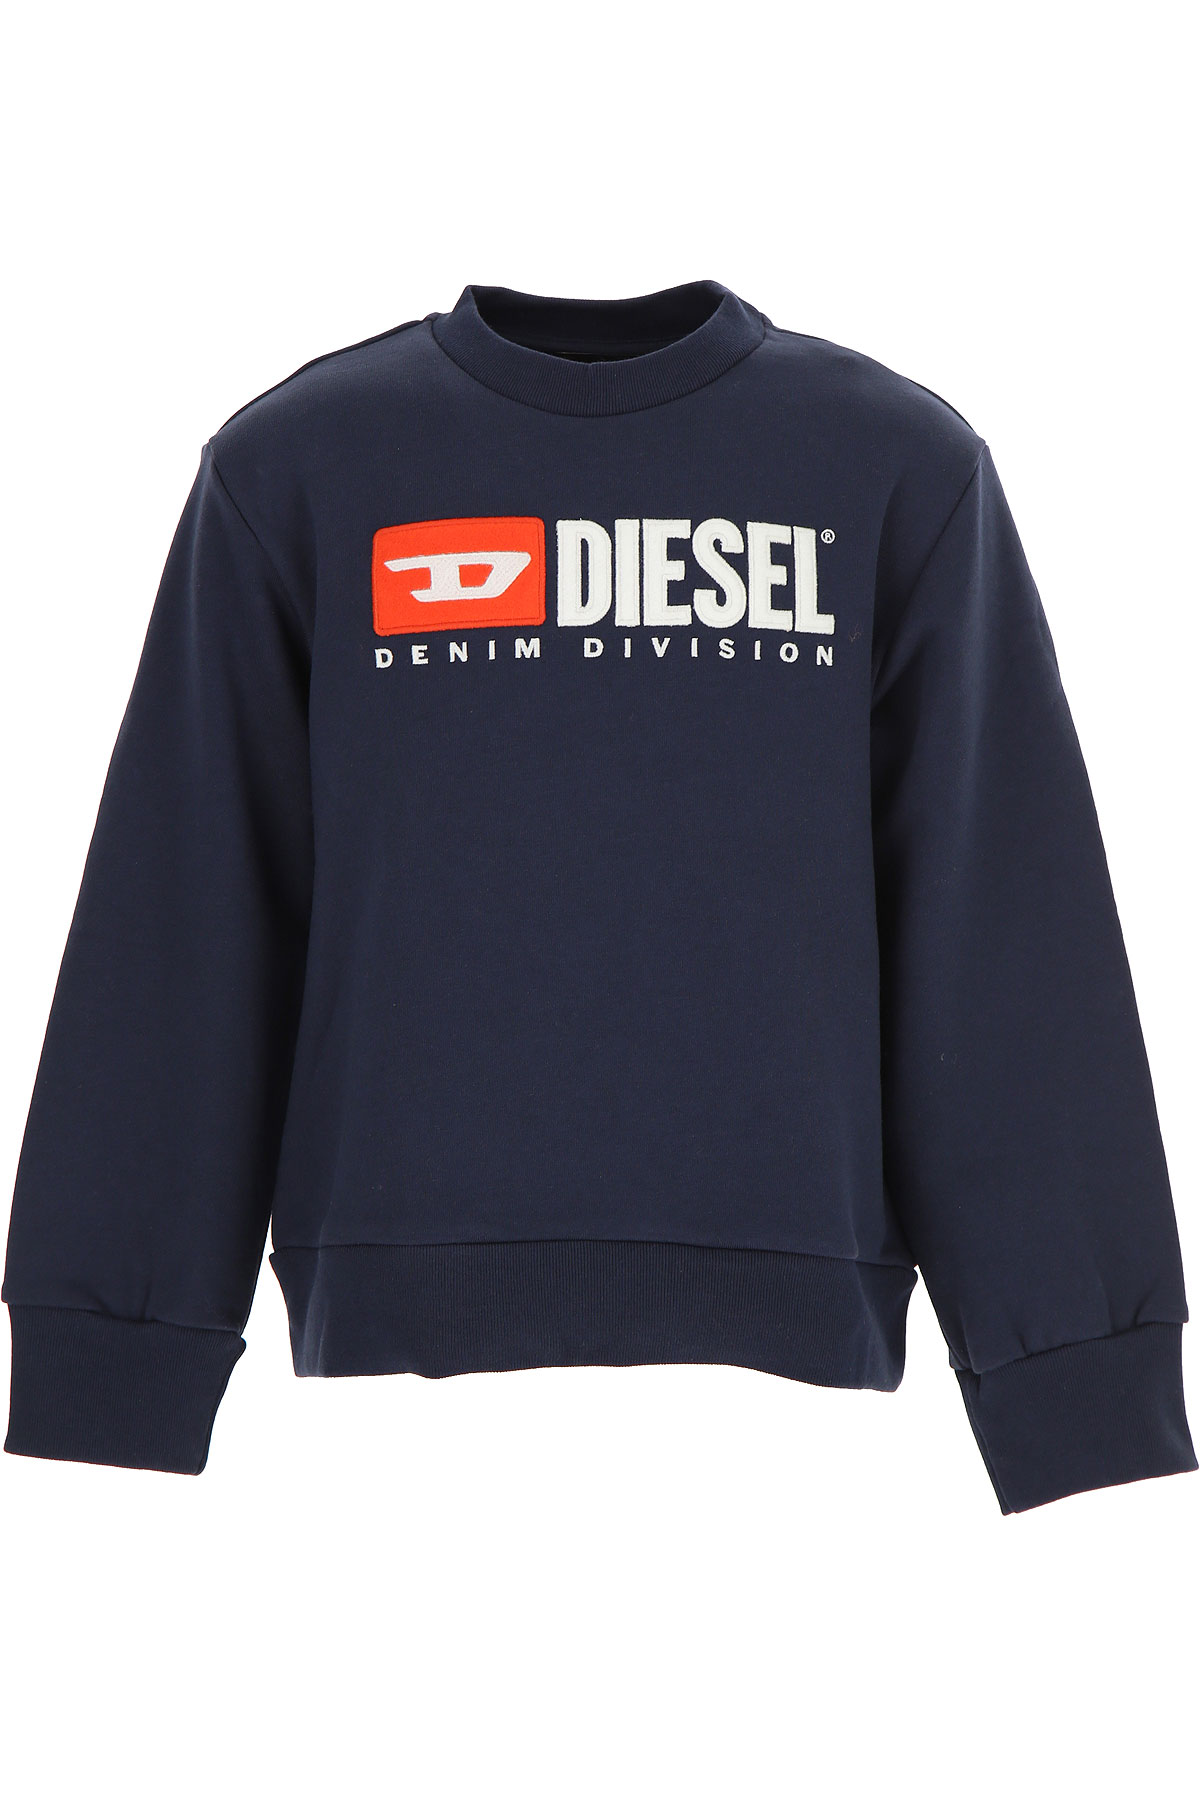 Diesel Kinder Sweatshirt & Kapuzenpullover für Jungen Günstig im Sale, Blau, Baumwolle, 2017, 10Y 12Y 8Y